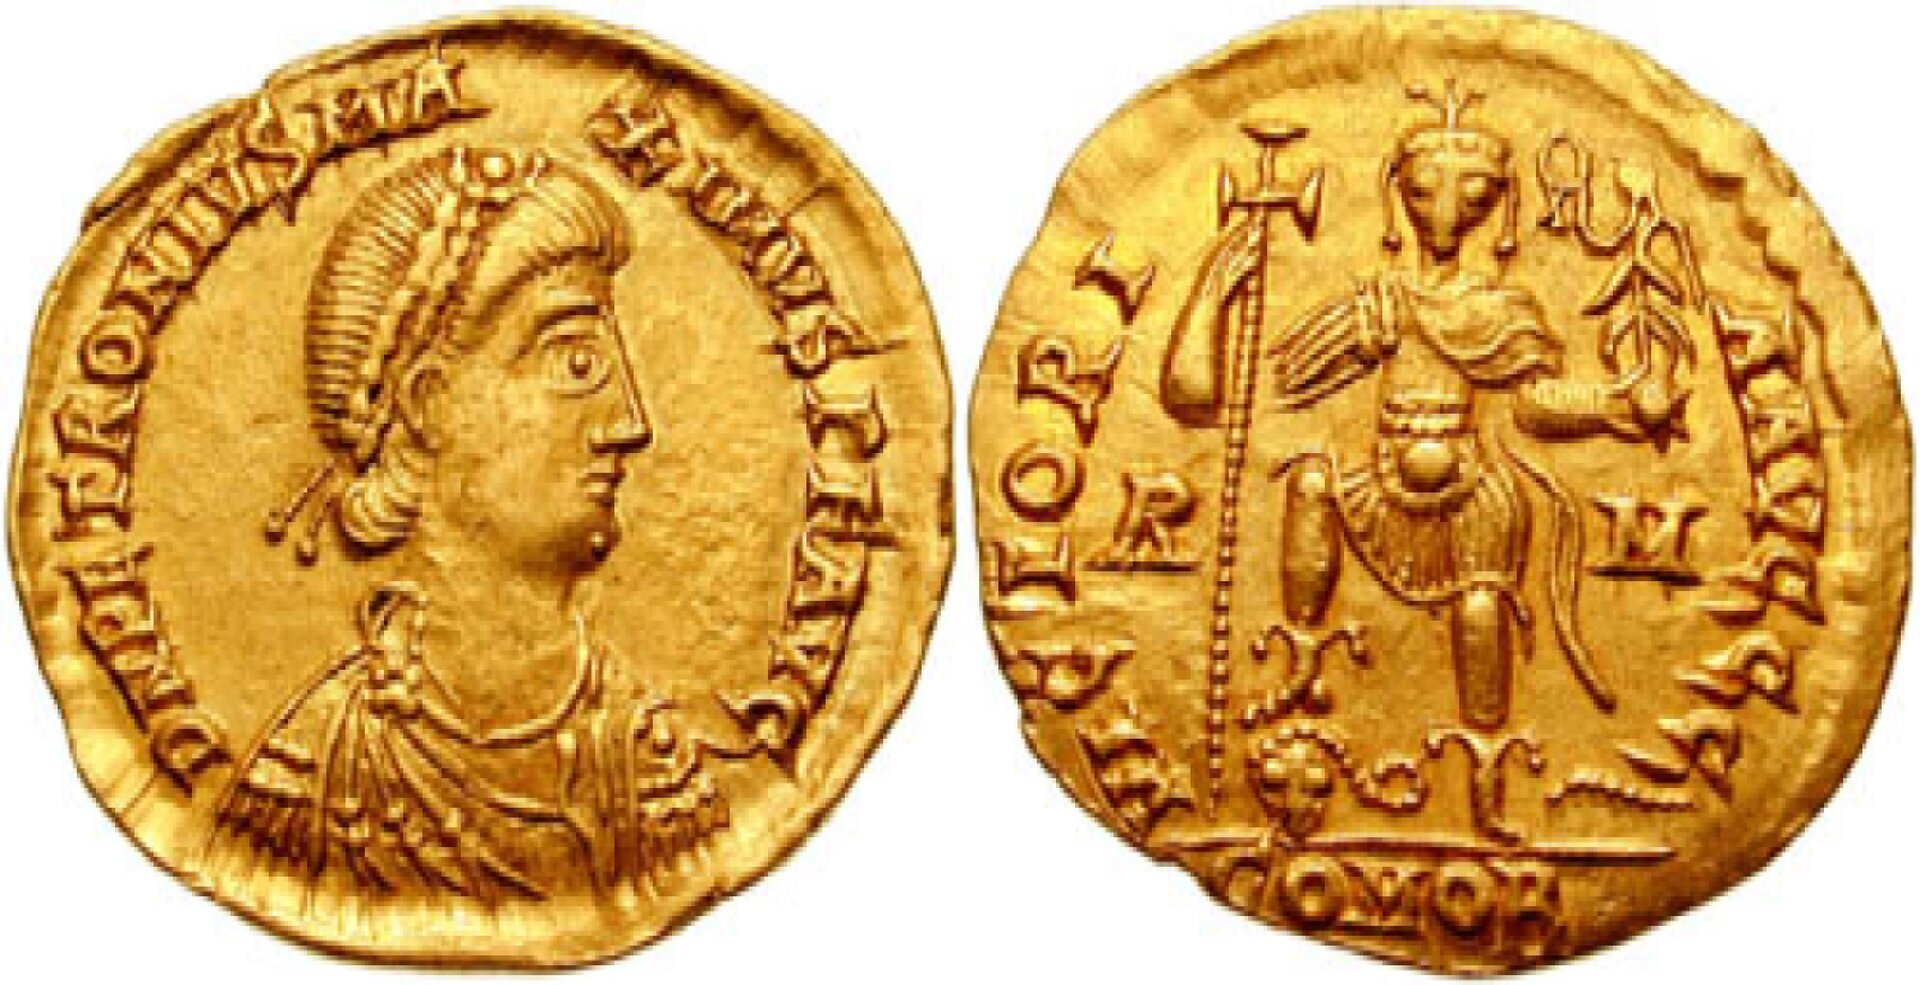 Zdjęcie przedstawia dwie złote monety. Na awersie monety, znajdującej się po lewej stronie, sylwetka rzymskiego mężczyzny z profilu, z zapinką na włosach. Oko ukazane nienaturalnie od frontu. Dookoła sylwetki w otoku napis po łacinie. Na rewersie, znajdującym się po prawej stronie, sylwetka wojownika z nienaturalną ludzką twarzą, trzymającego prawą nogę na czaszce. W lewej ręce trzyma berło, w prawej zaś krzyż na długim drzewcu. Na głowie postać nosi koronę. W otoku napis po łacinie. 